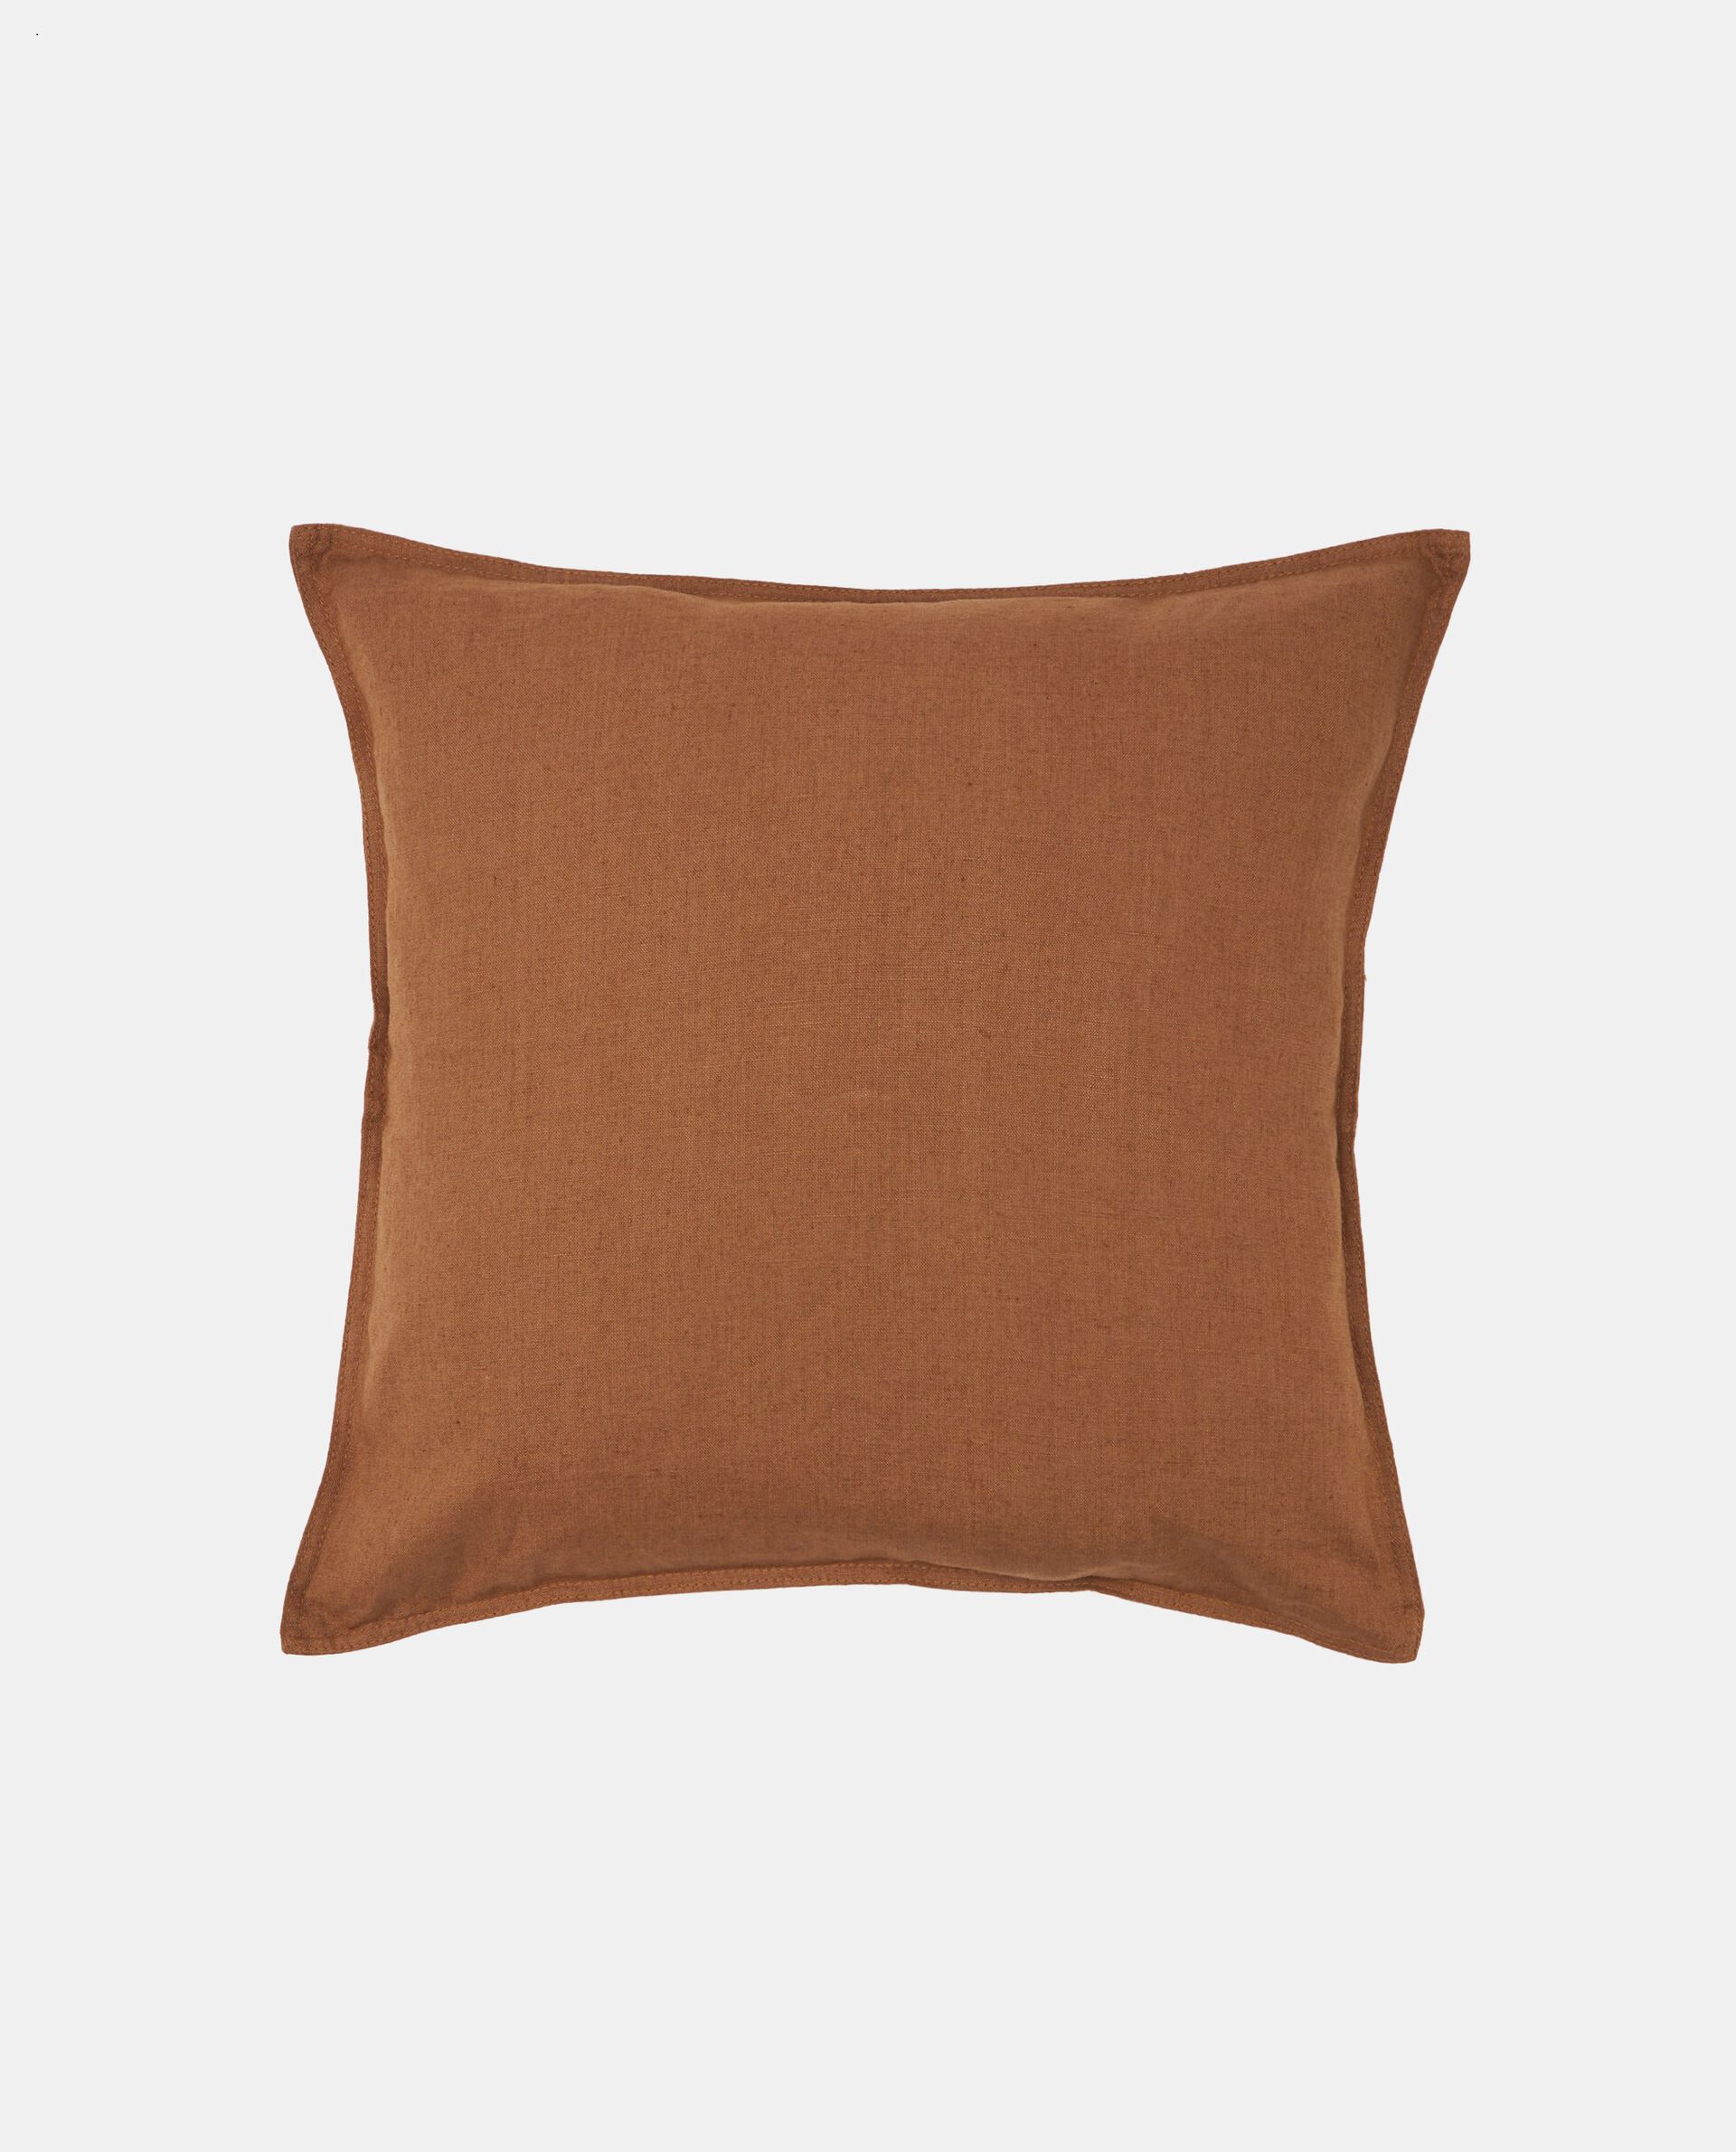 Чехол на подушку из чистого льна, табачный коричневый